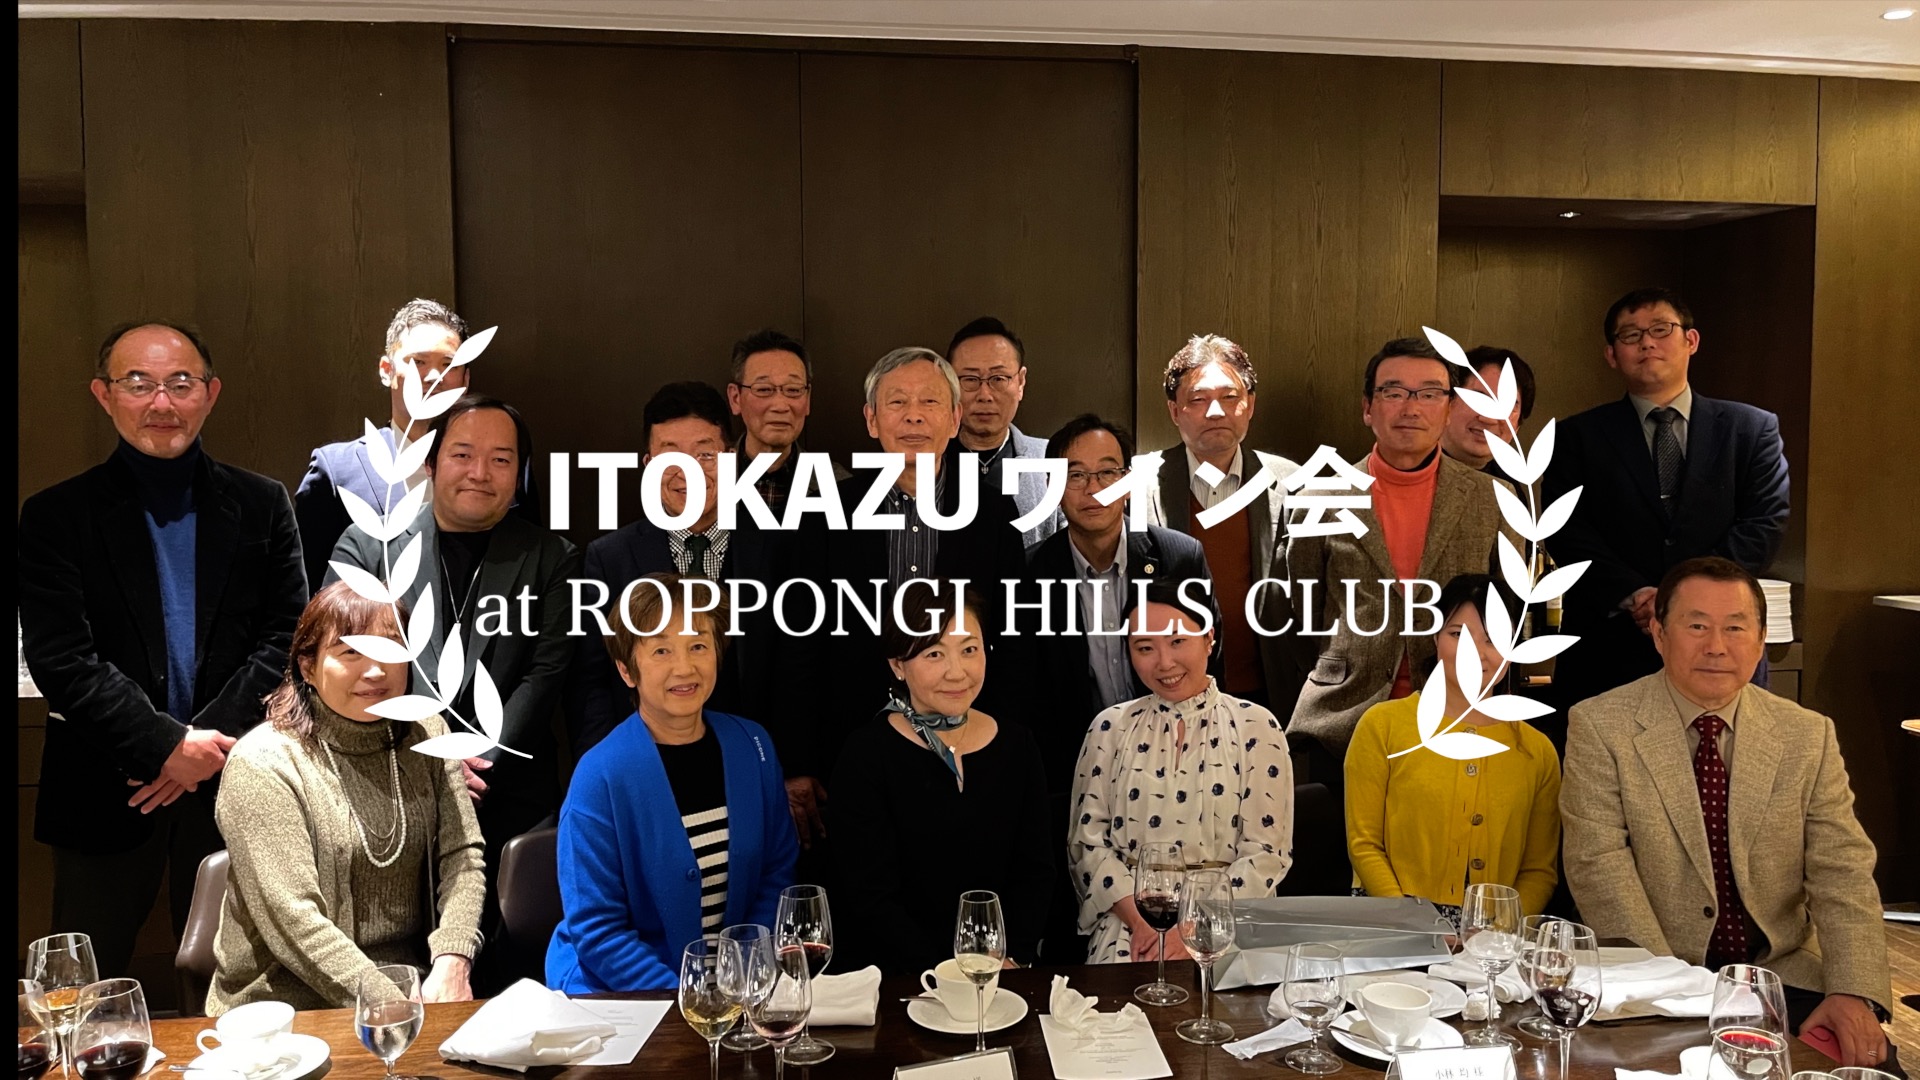 2月25日に開催された「ITOKAZUワイン会」のプロモーションビデオを公開しました。